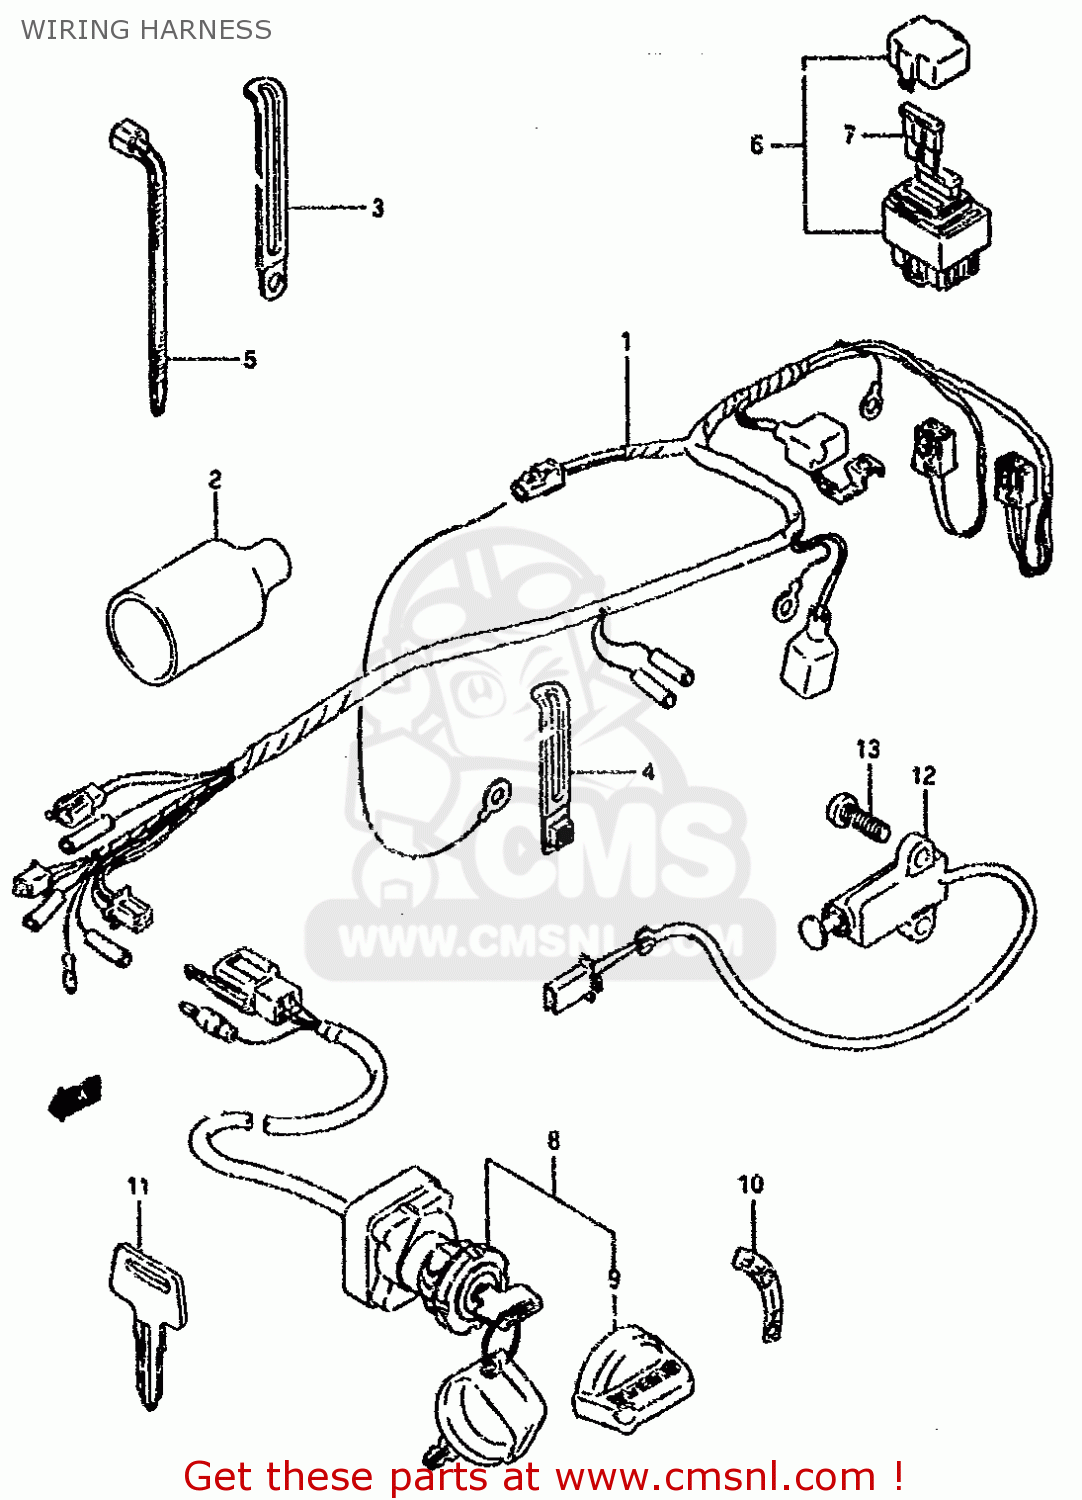 suzuki lt80 wiring diagram